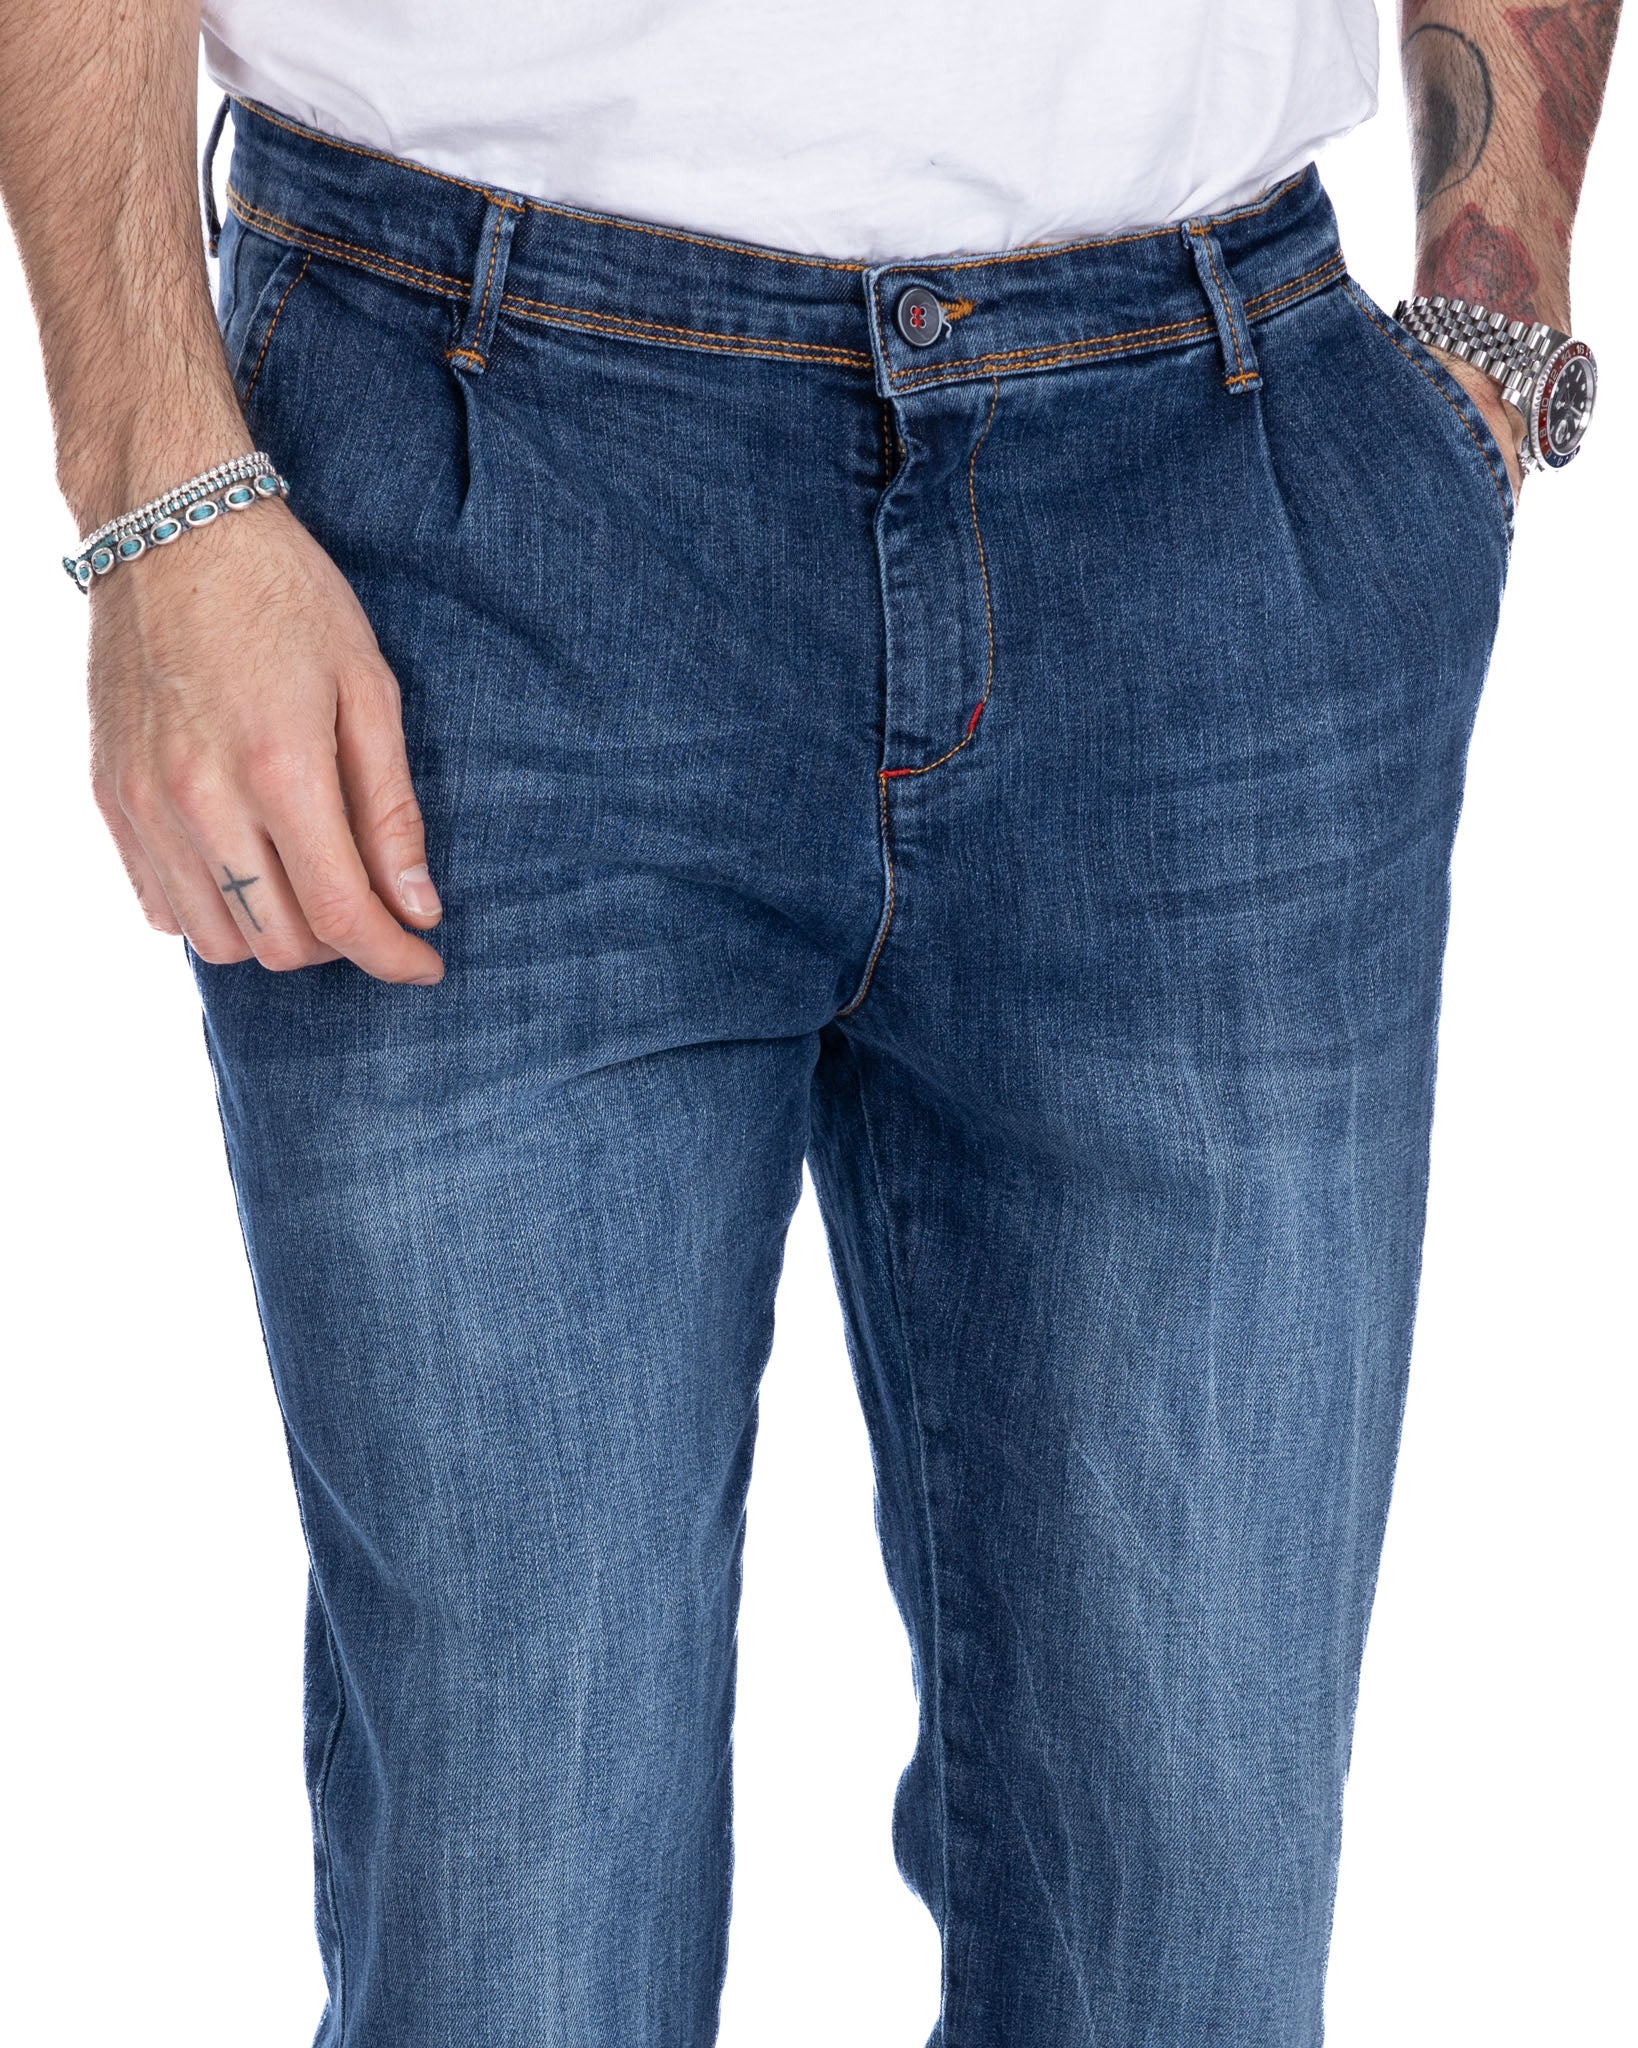 Orleans - jeans tasca america lavaggio medio